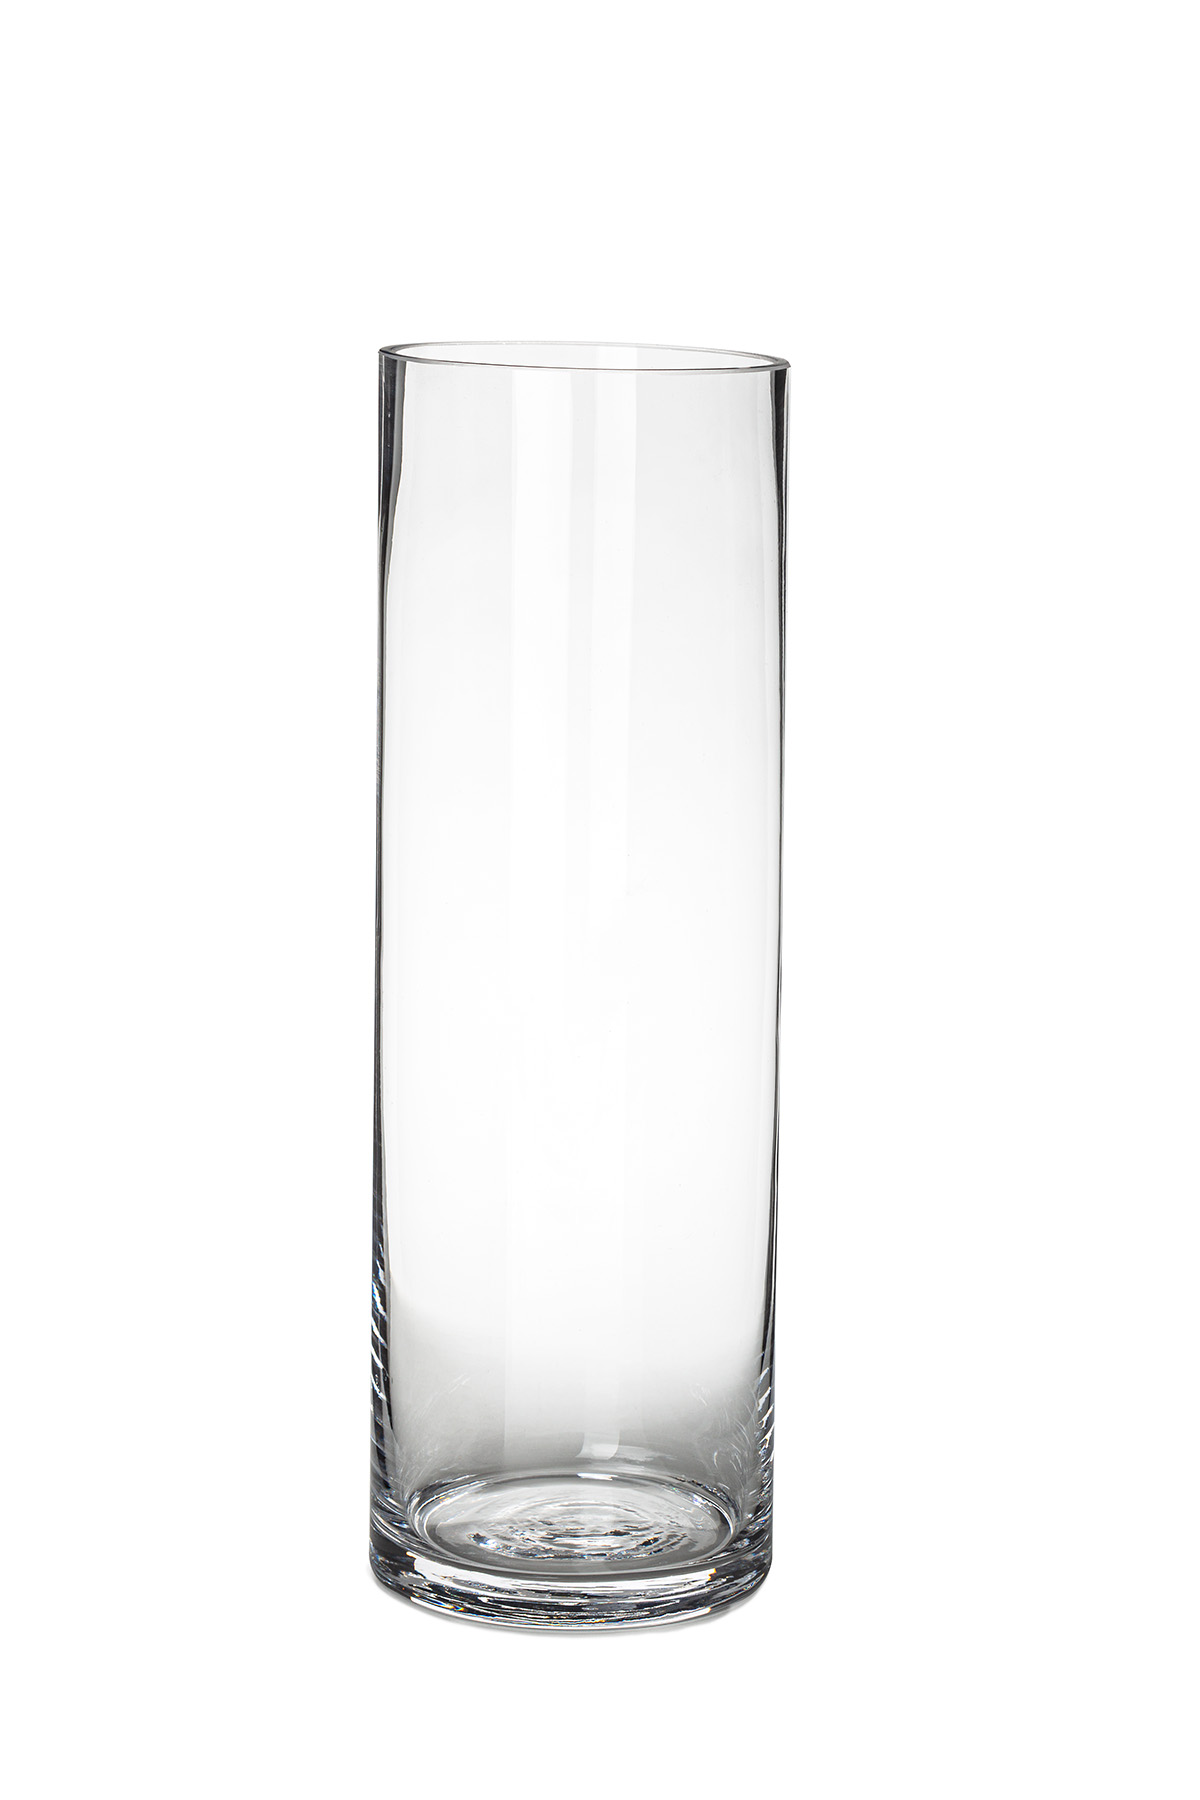 12 inch cylinder vase